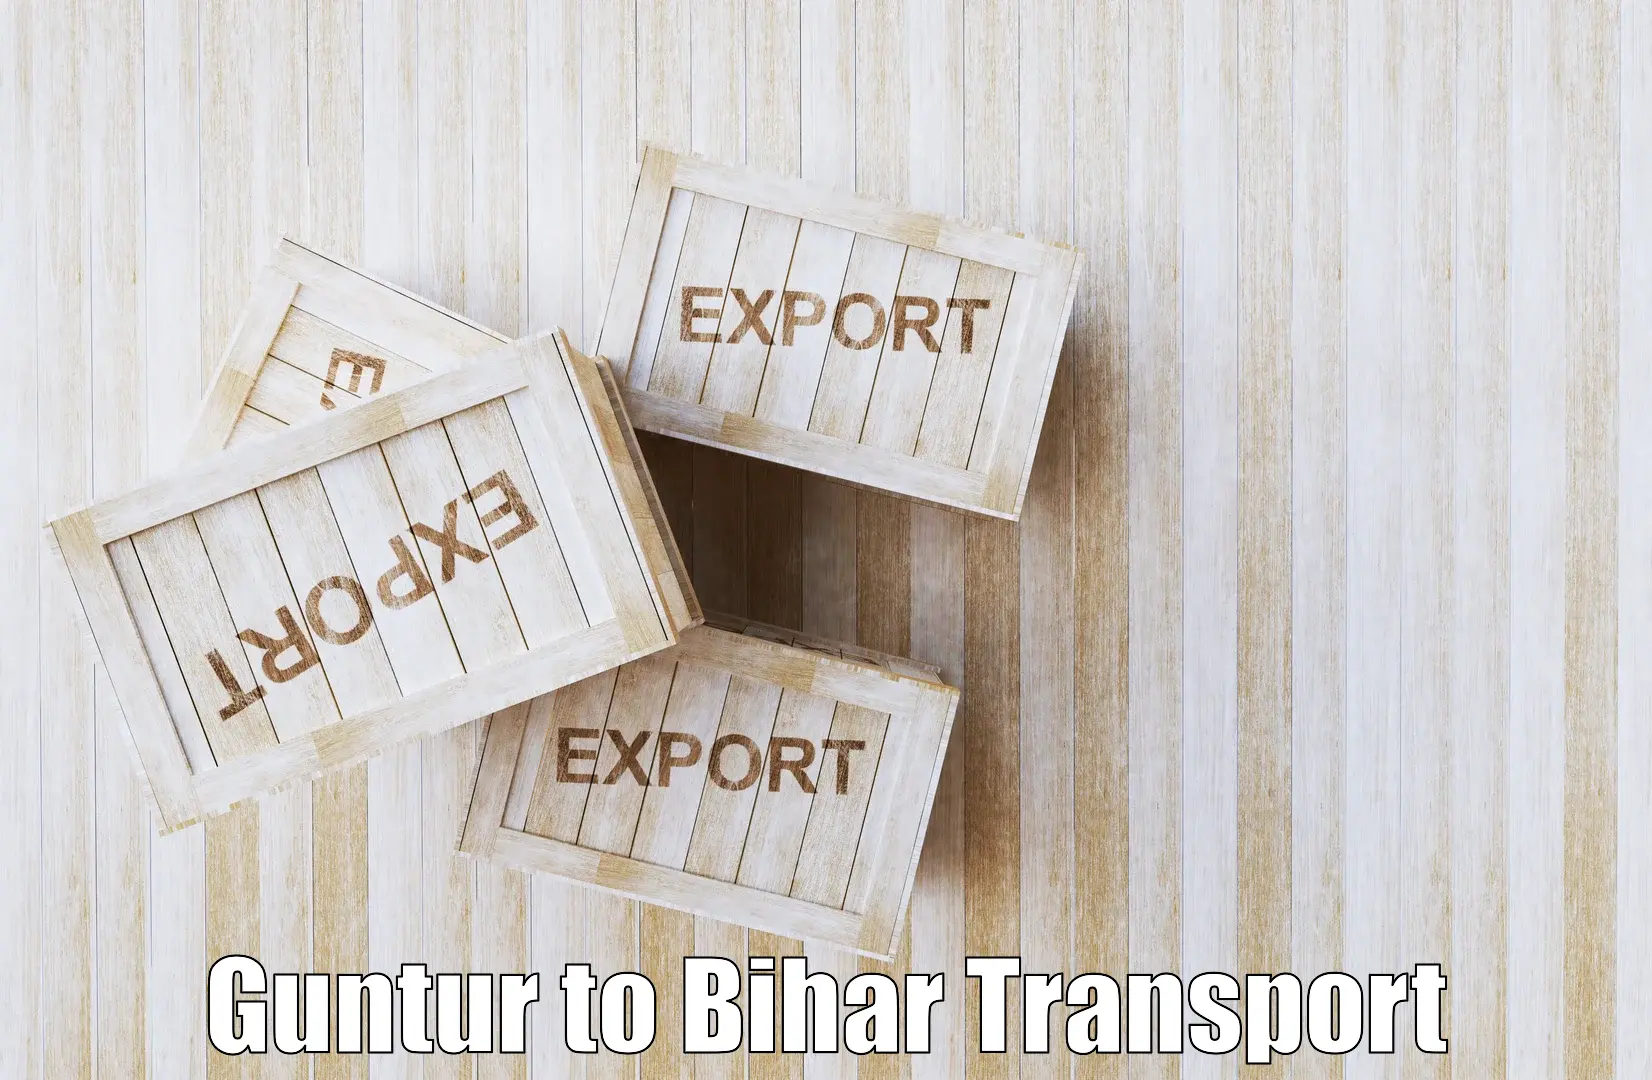 Container transport service Guntur to Sasaram